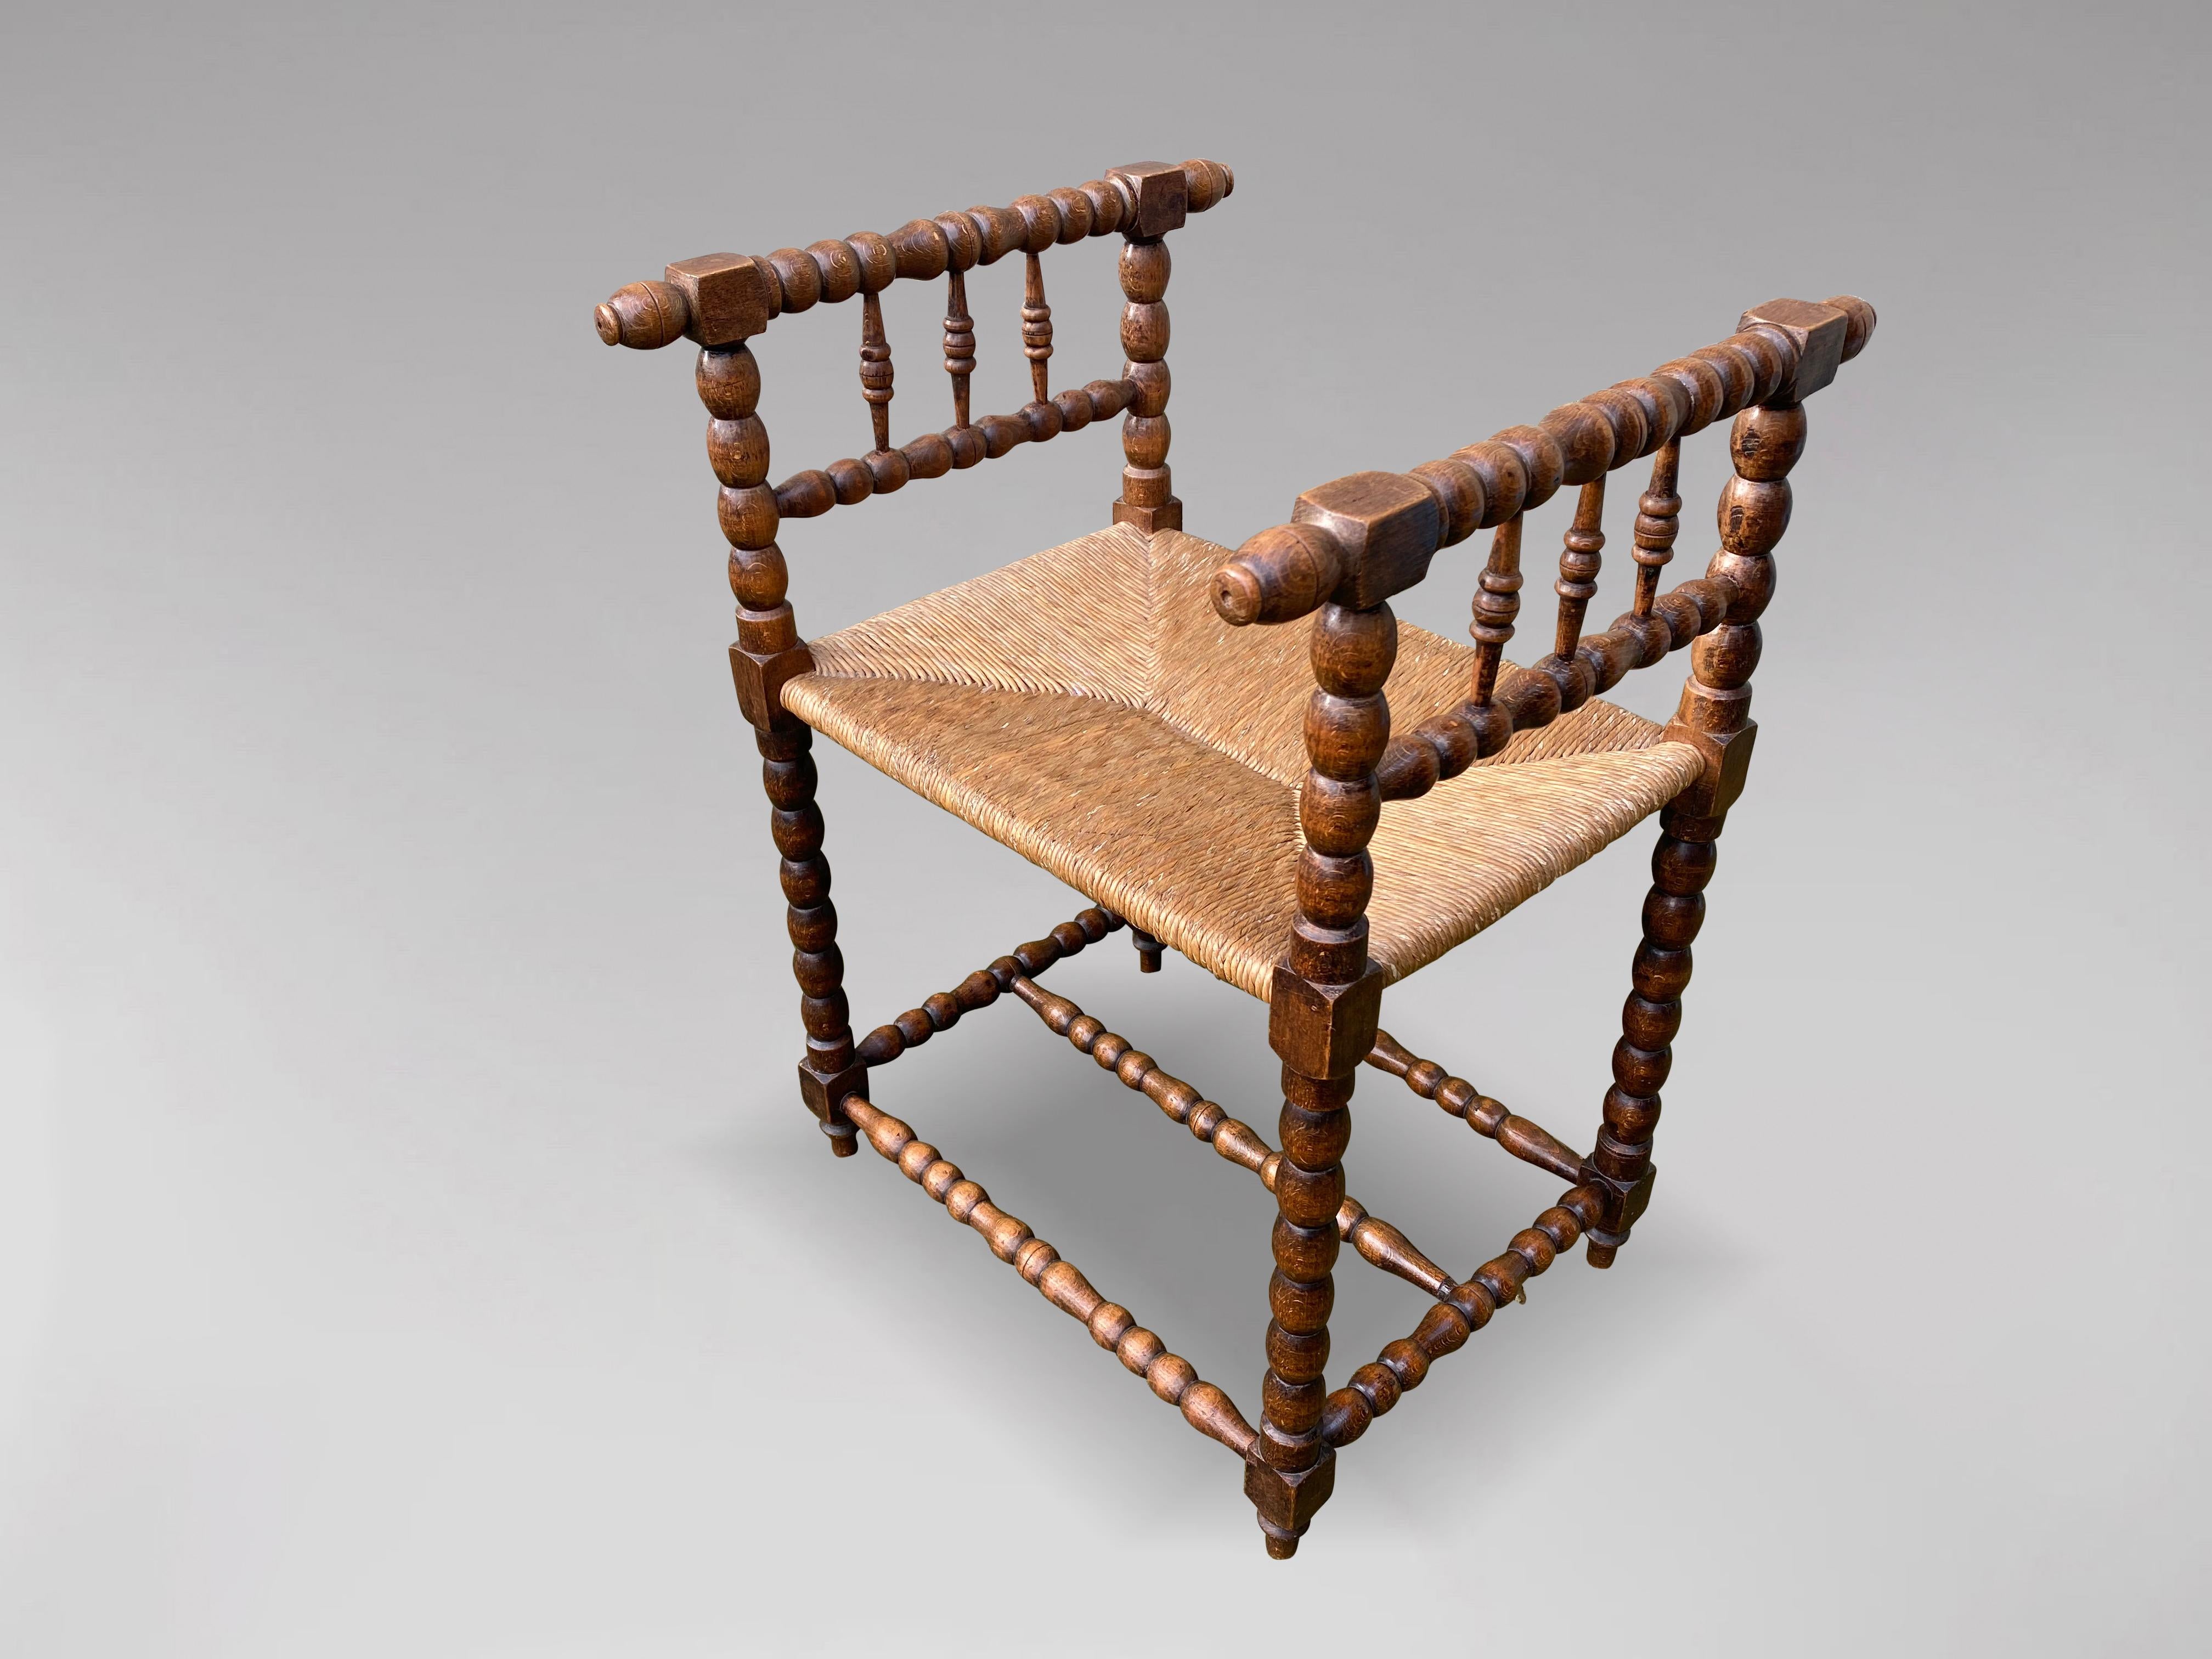 Ein sehr verschnörkelter Hocker oder Sessel aus Nussbaumholz aus dem späten 19. Wunderschön gedrechselter Spulenrahmen mit dreifachem Spannrahmen.

Die Abmessungen sind:
Höhe: 75cm (29.5in)
Breite: 55cm (21.7in)
Tiefe: 53cm (20.9in)

Bequeme